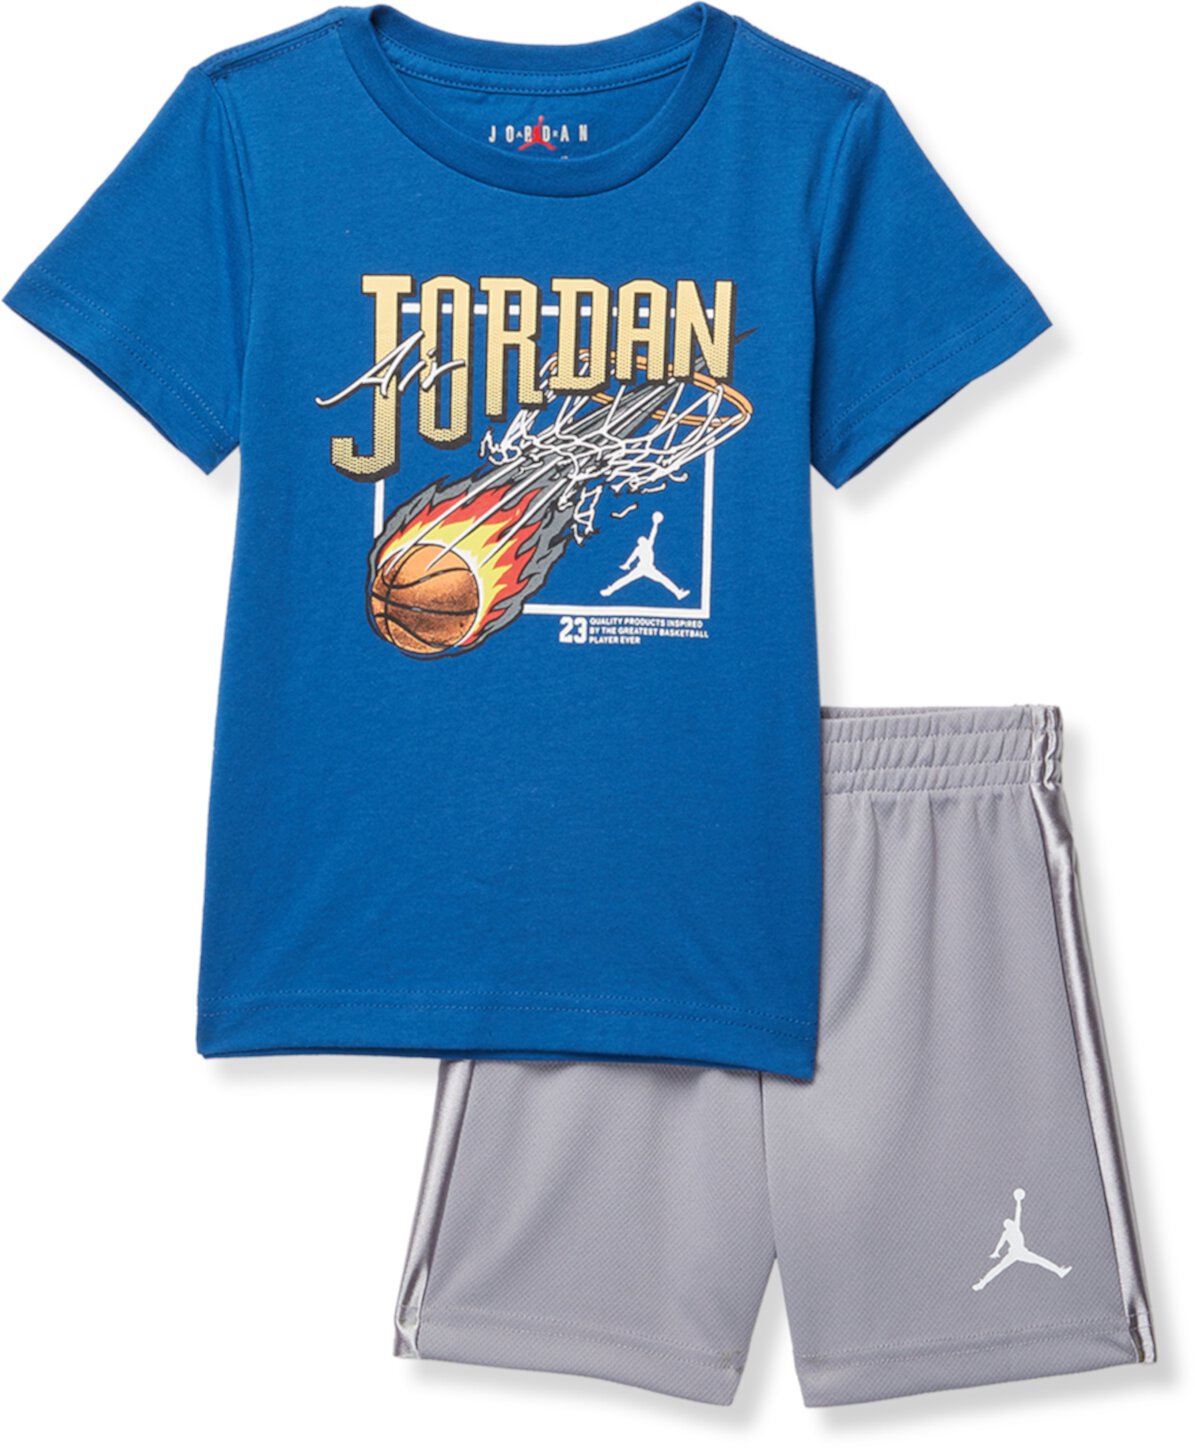 Комплект шорт из сетки Air Court (для малышей) Jordan Kids